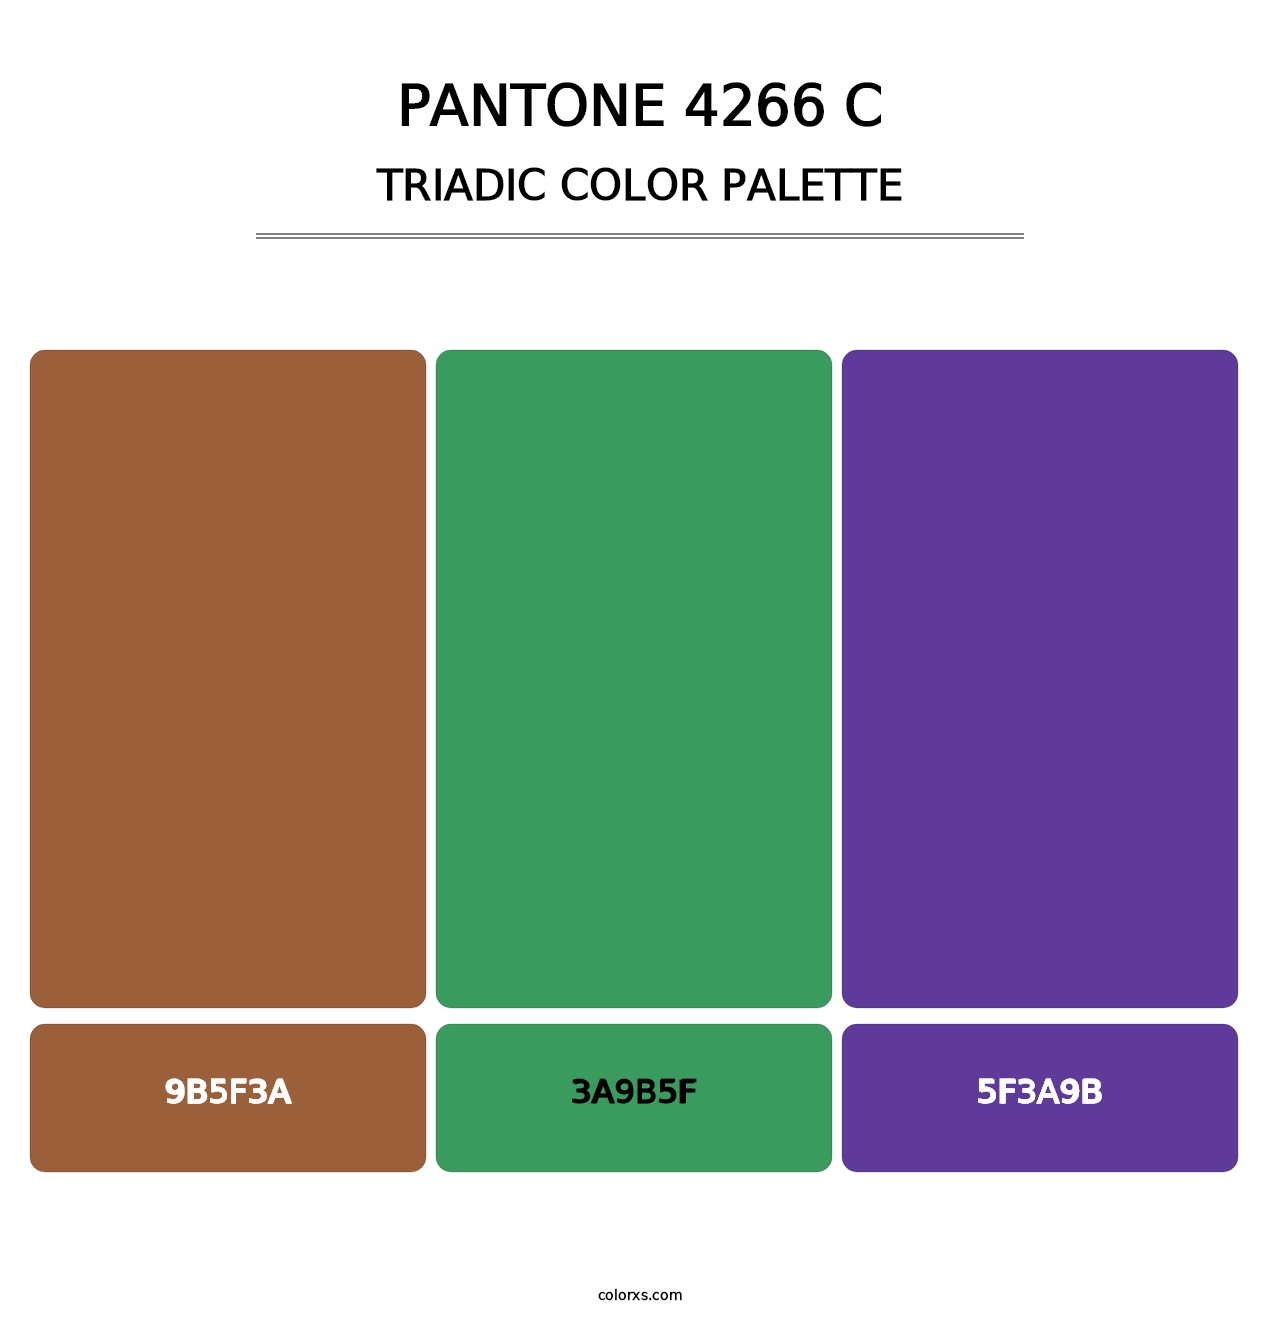 PANTONE 4266 C - Triadic Color Palette